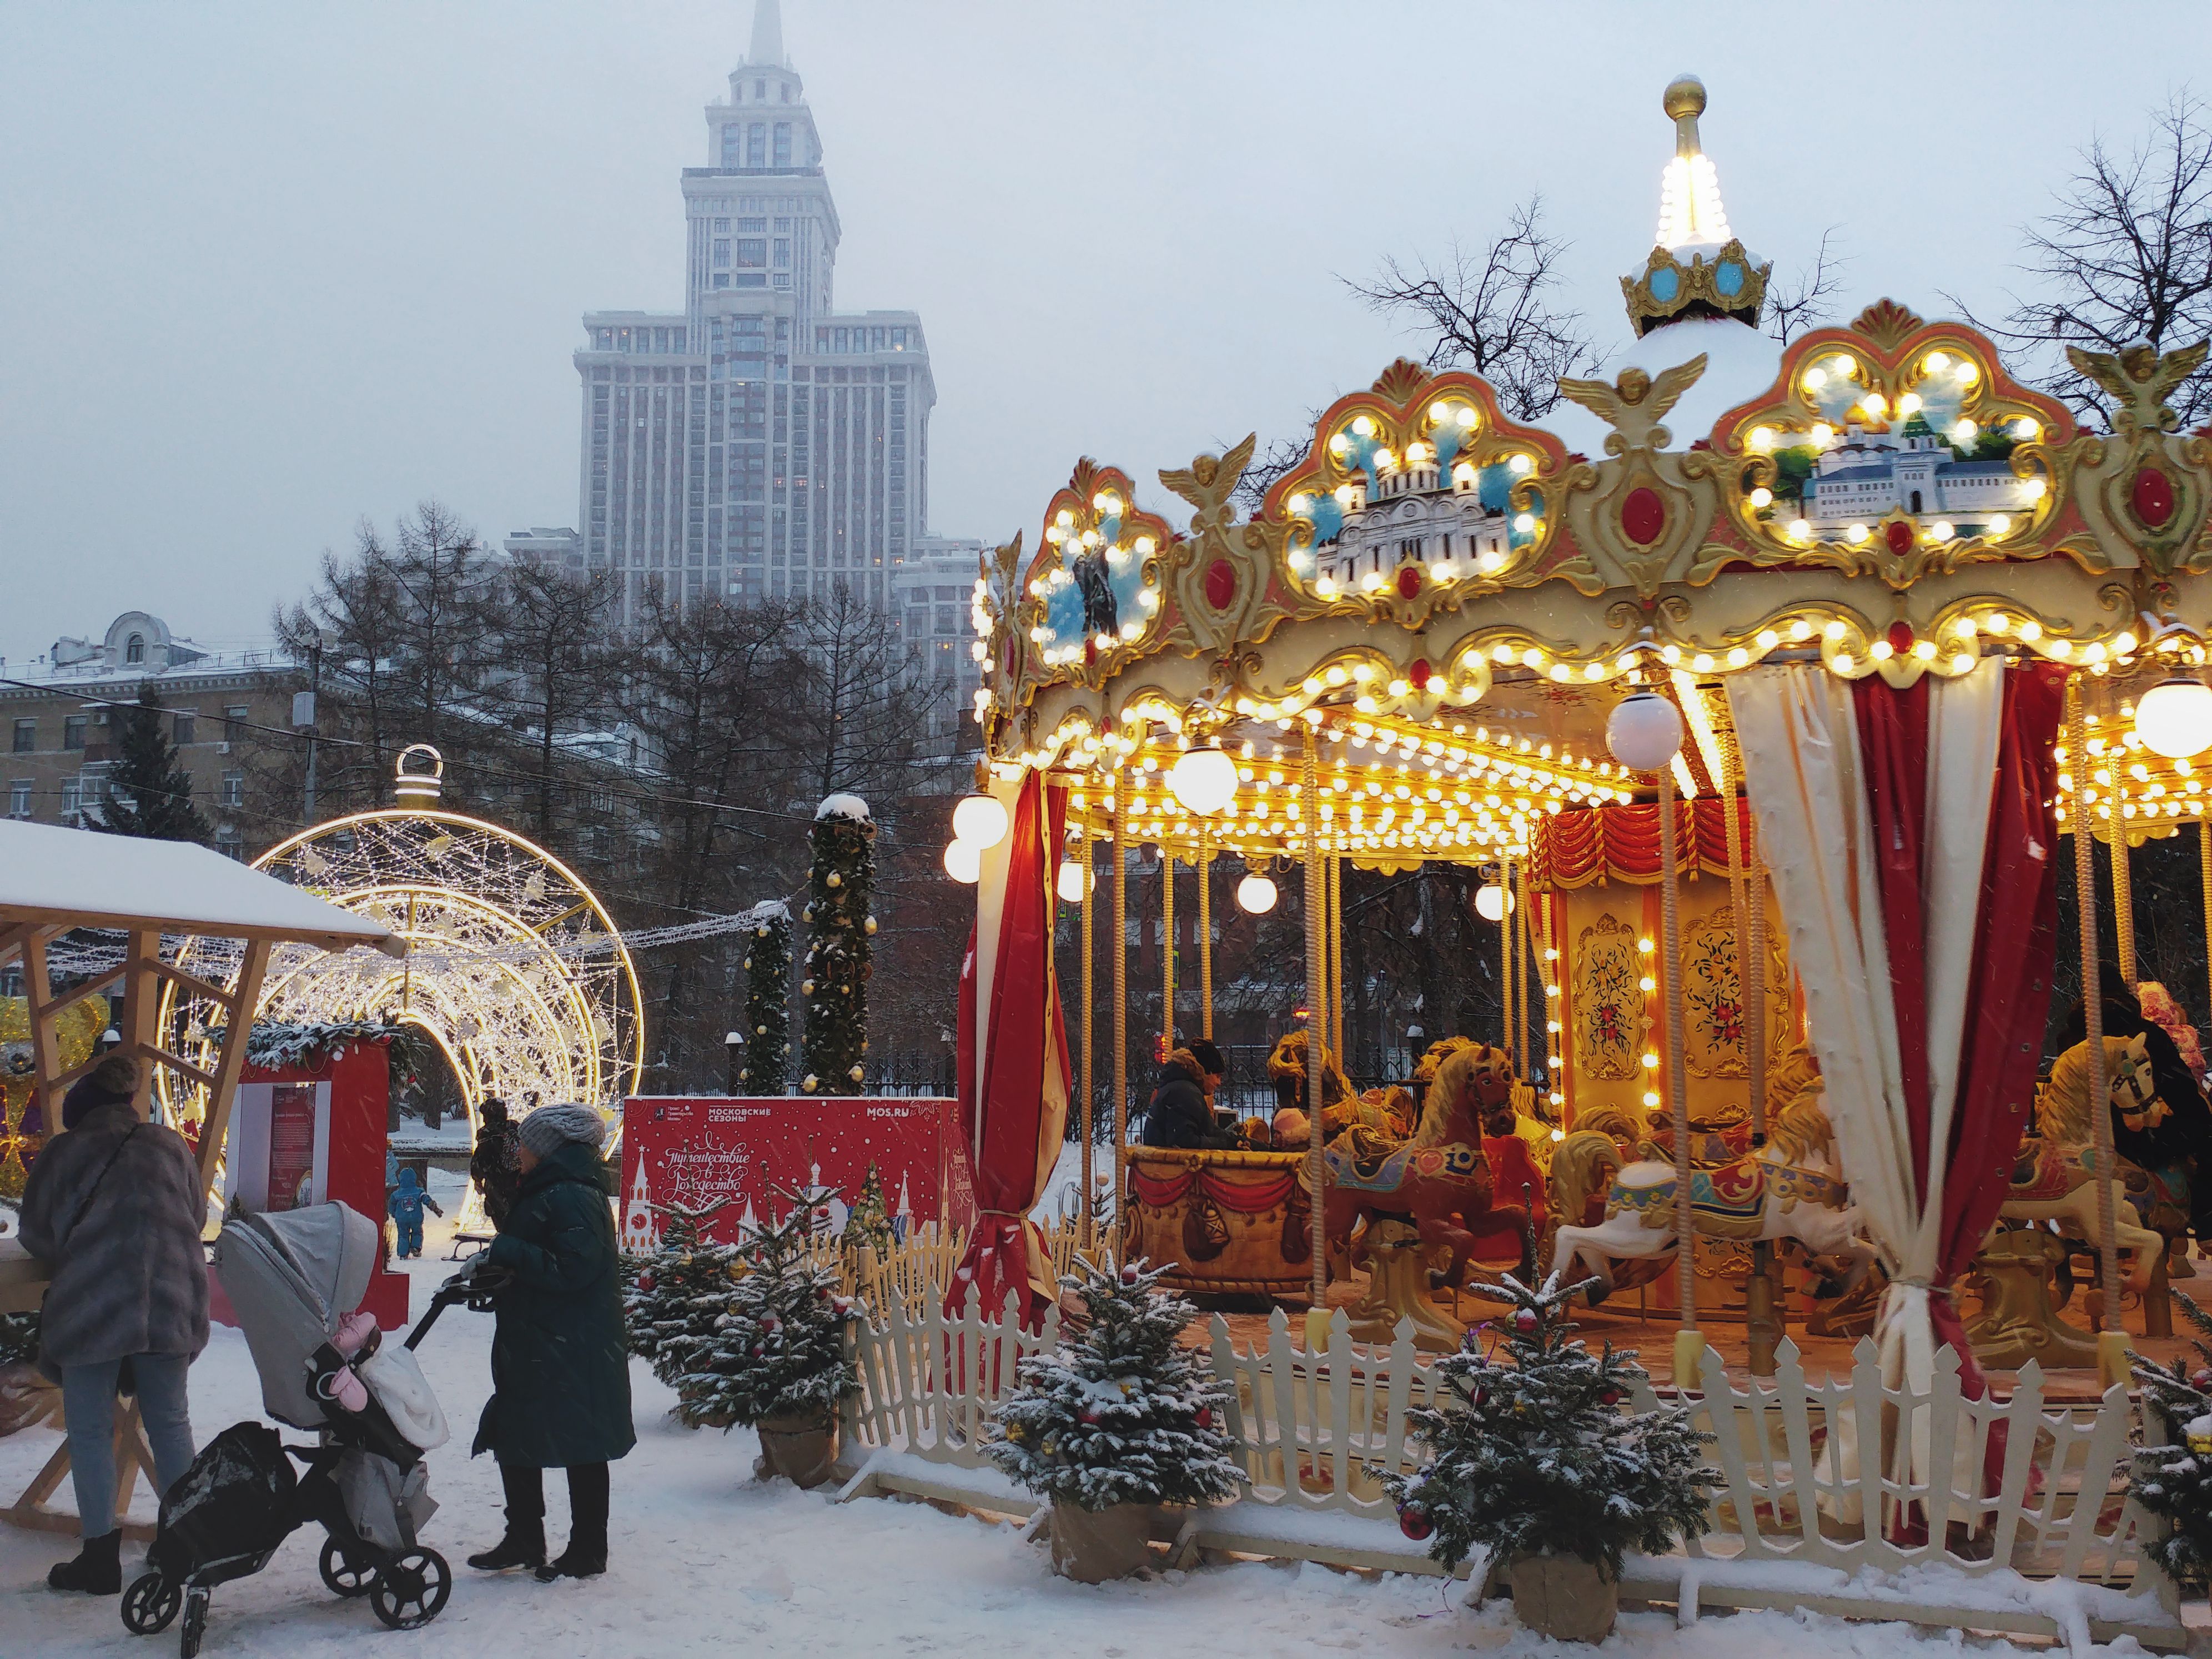 Christmas festivities in Sokol neighborhood, Moscow